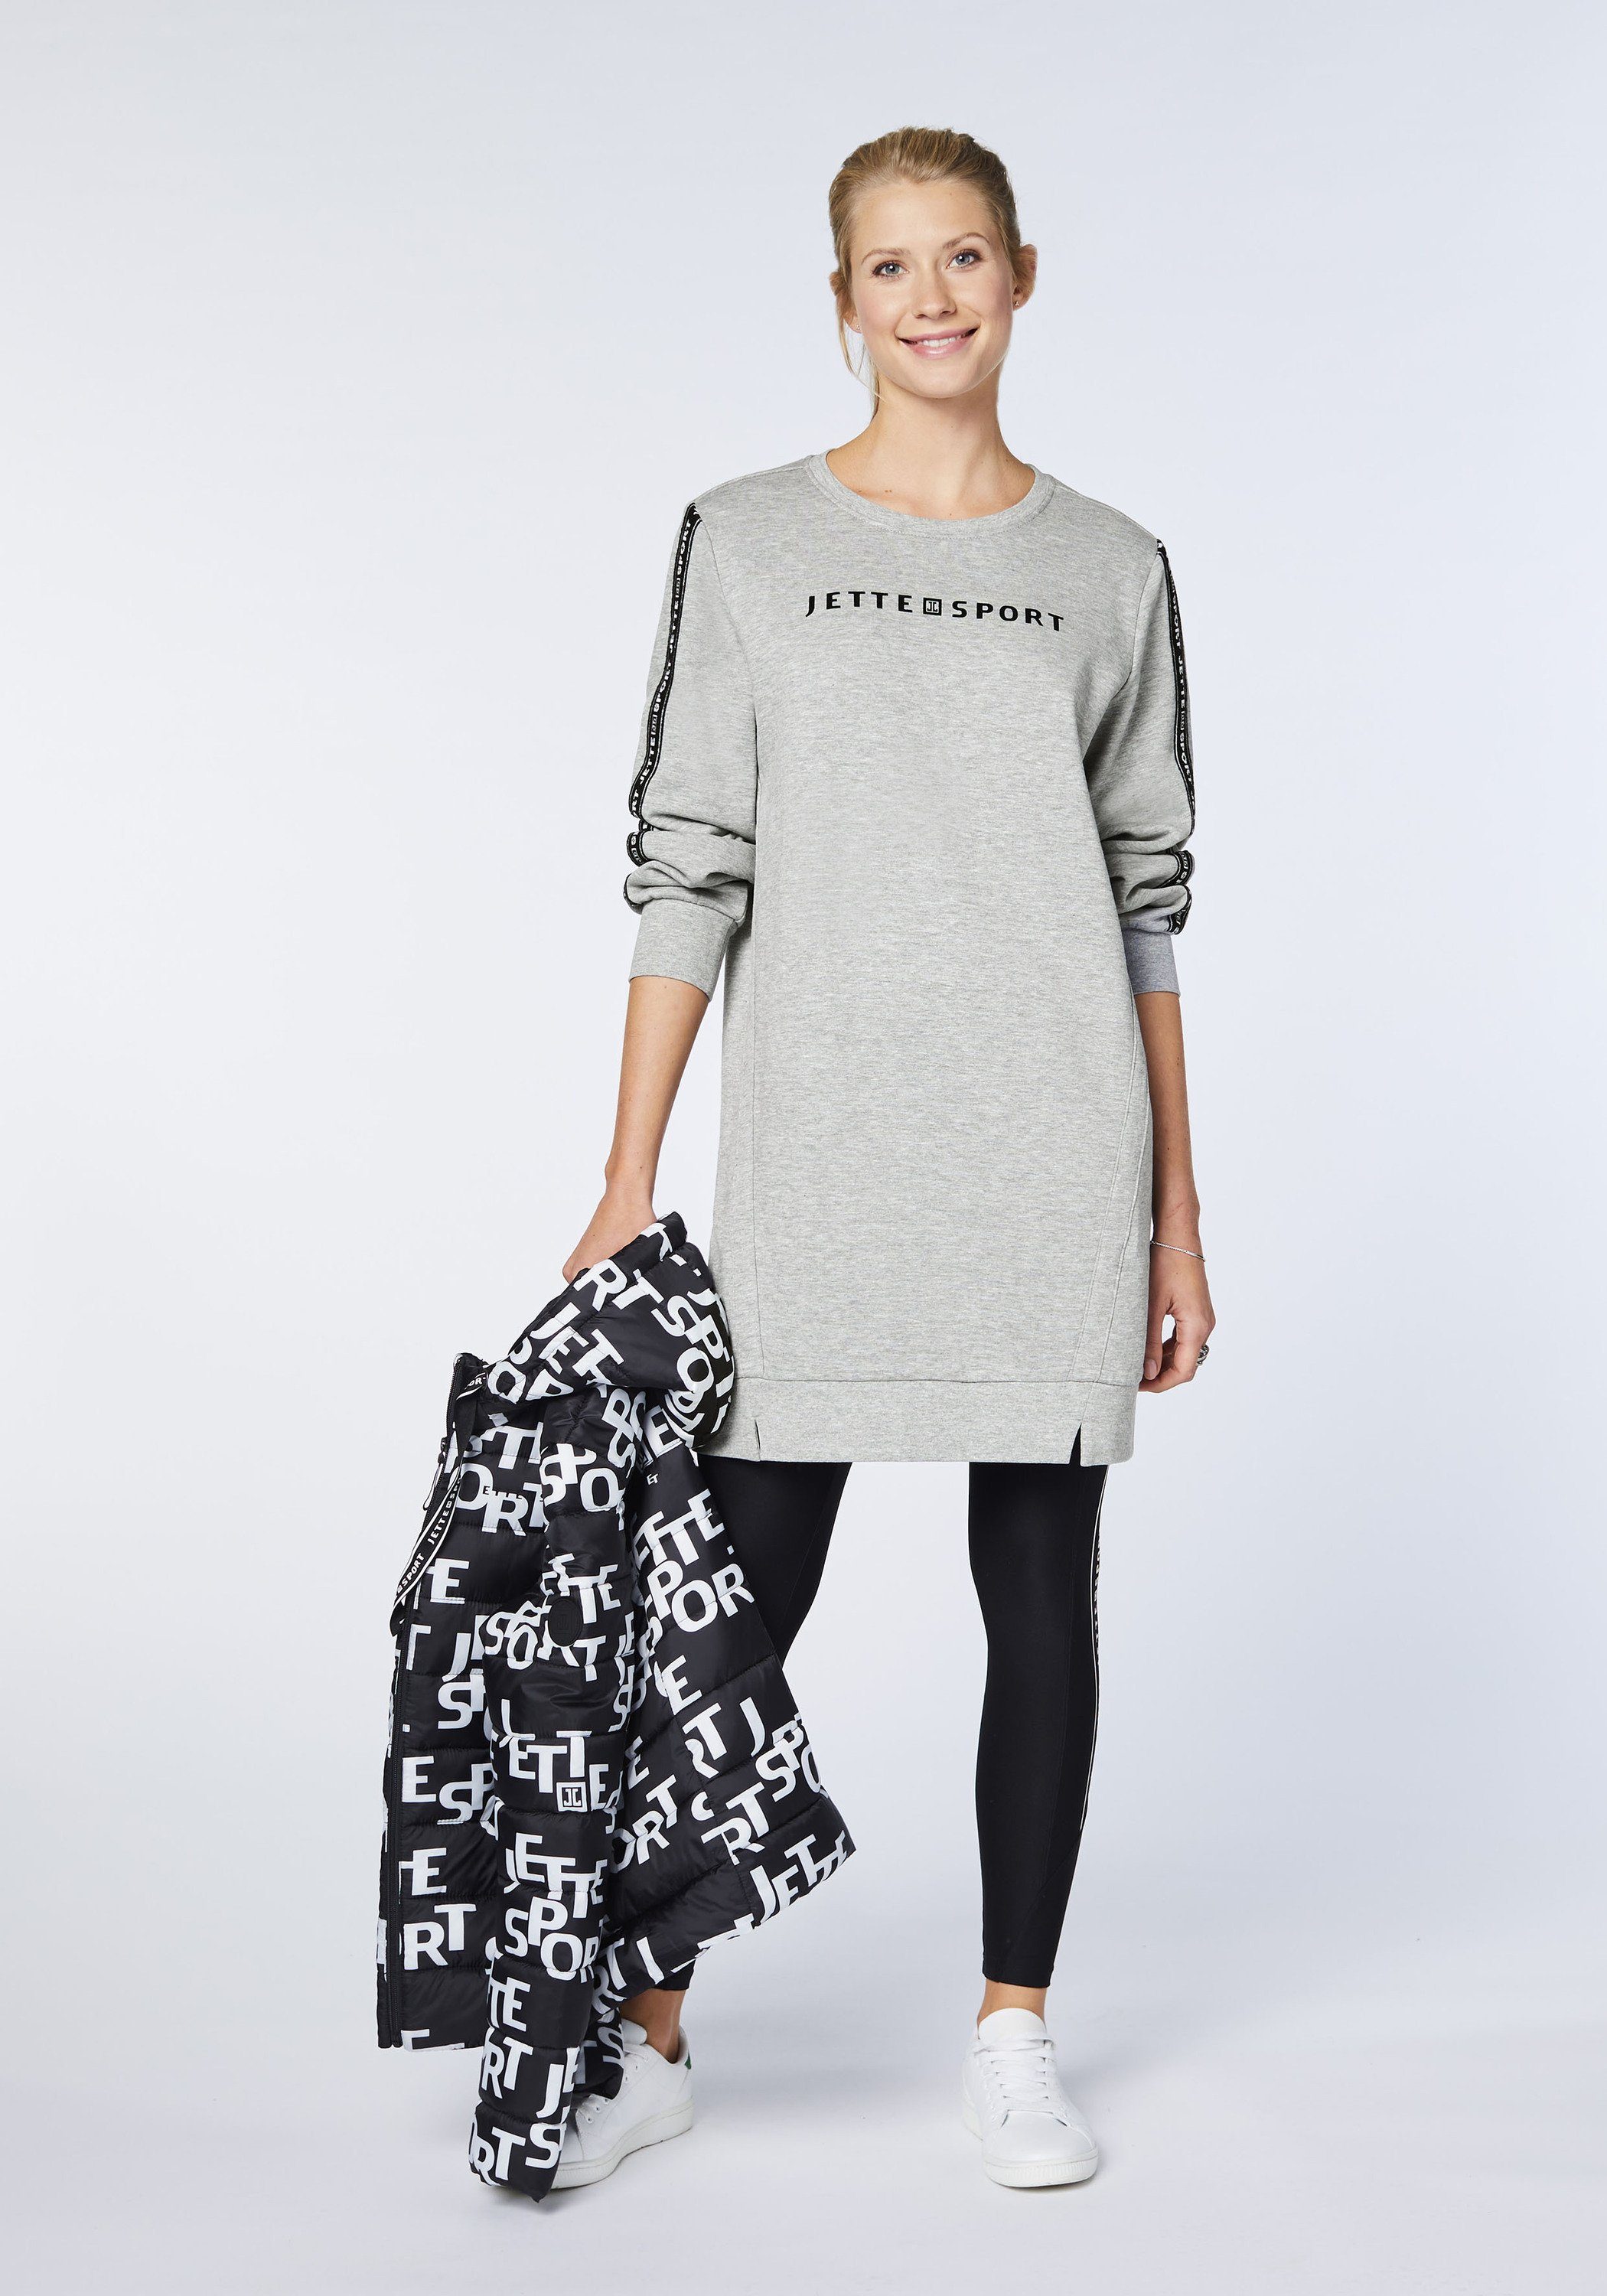 Neutral Melange Gray Sweatkleid JETTE mit 17-4402M SPORT Logo-Dekor